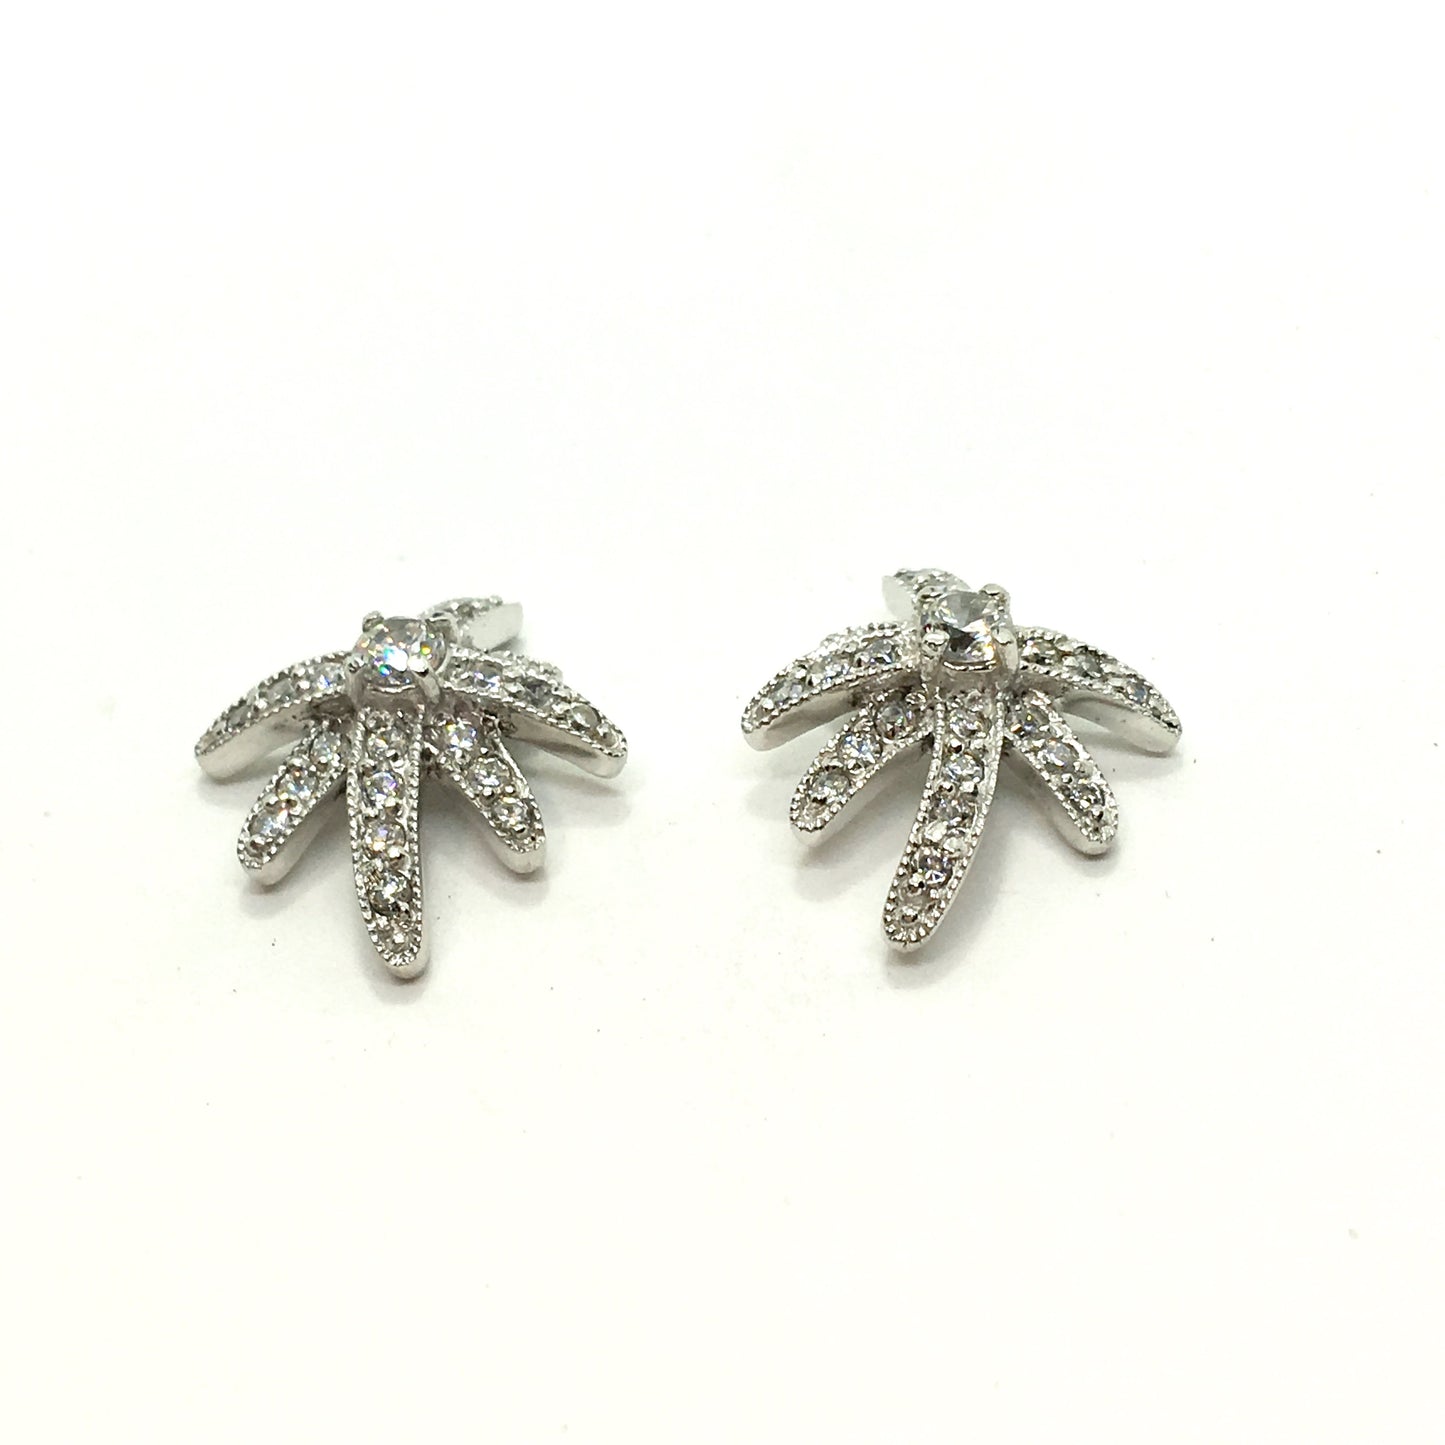 Earrings - Attractive Starburst Design Sterling Silver Earrings  online at Blingschlingers.com - USA